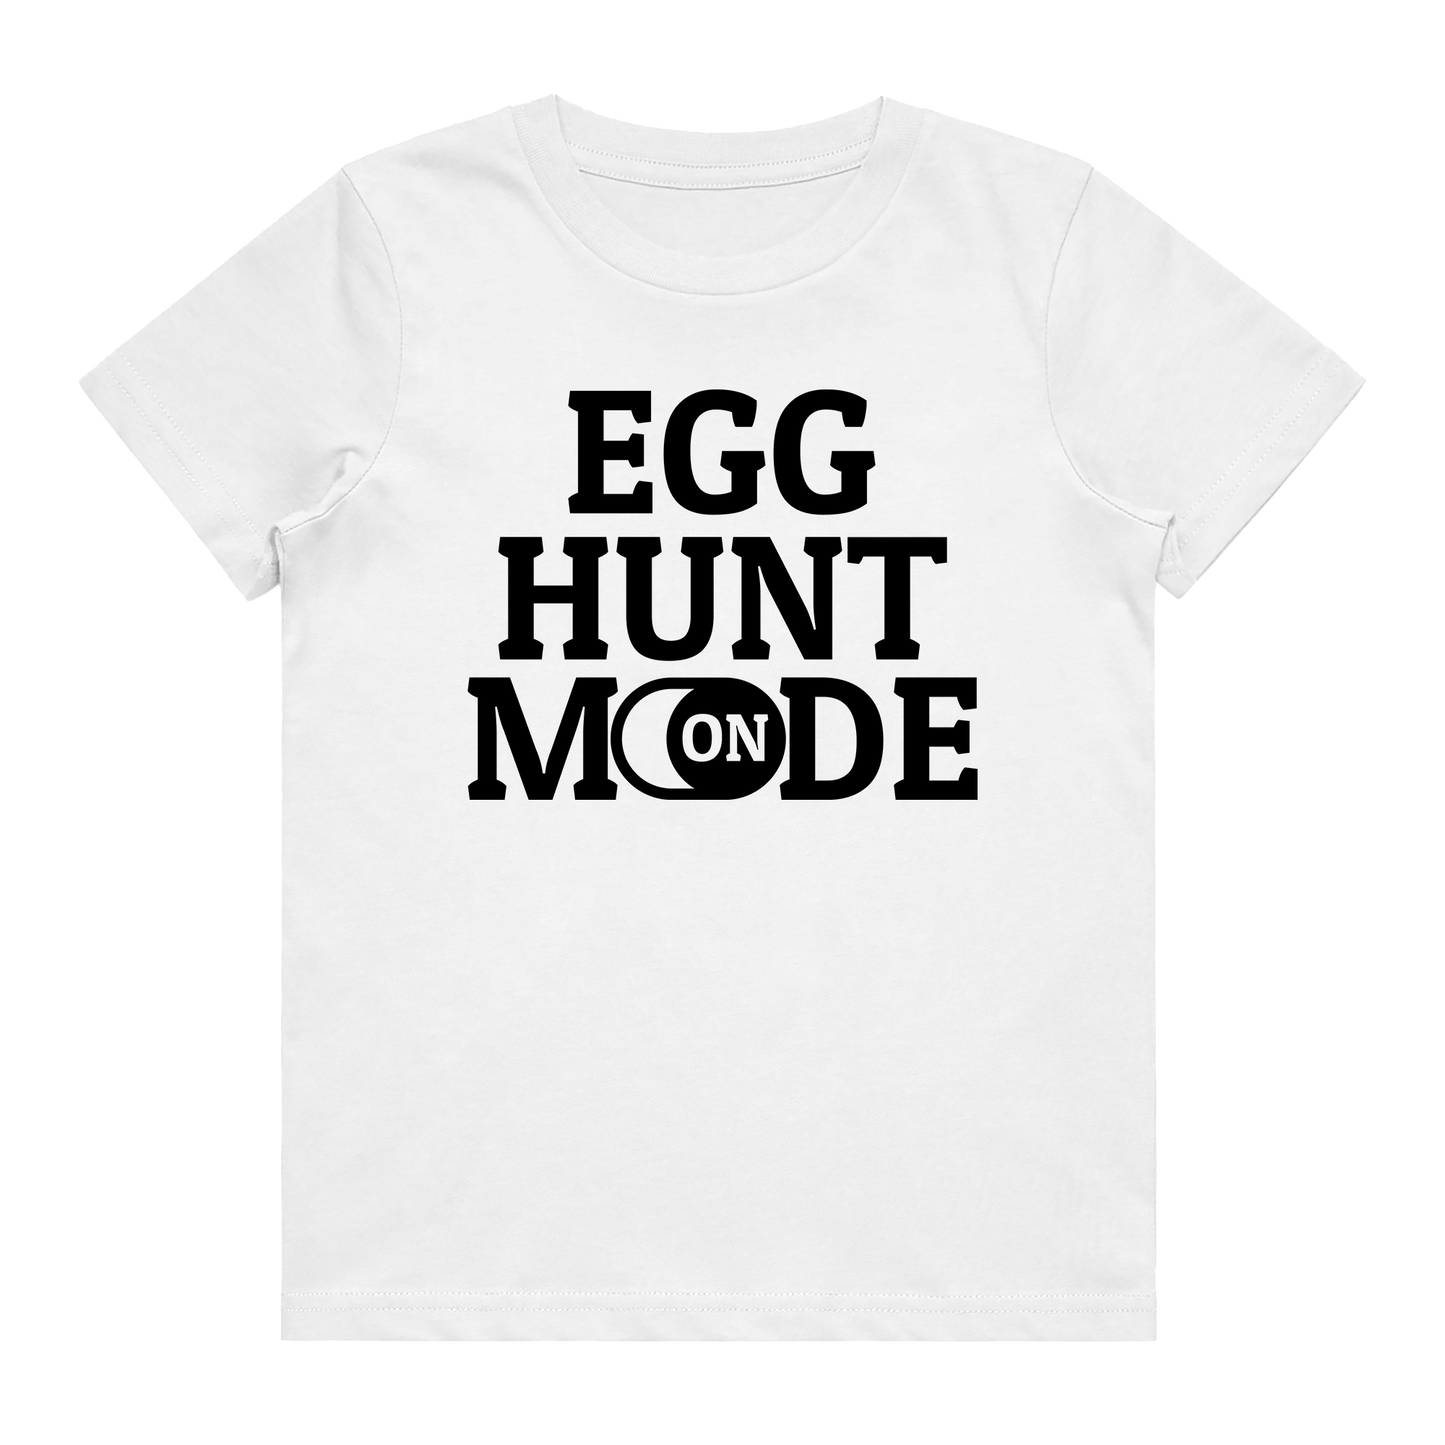 Kid's T-Shirt - Egg Hunt Mode On